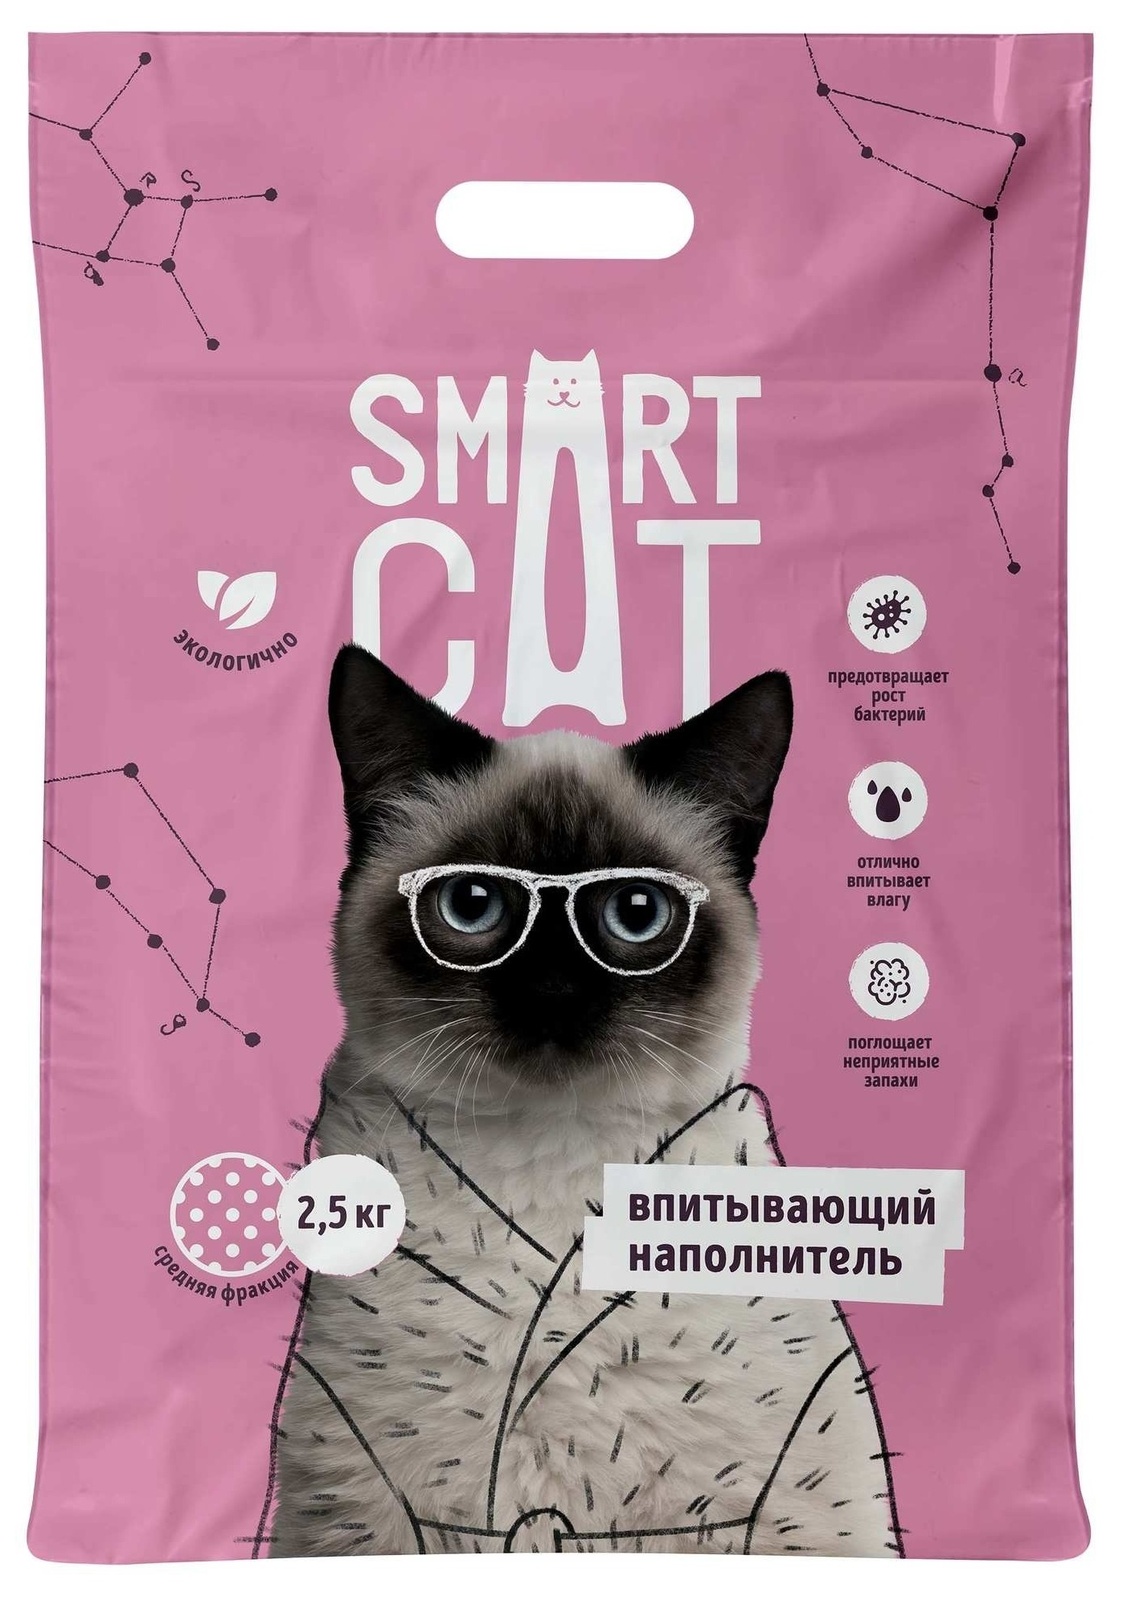 Smart Cat наполнитель Smart Cat наполнитель впитывающий наполнитель, средняя фракция (2,5 кг)